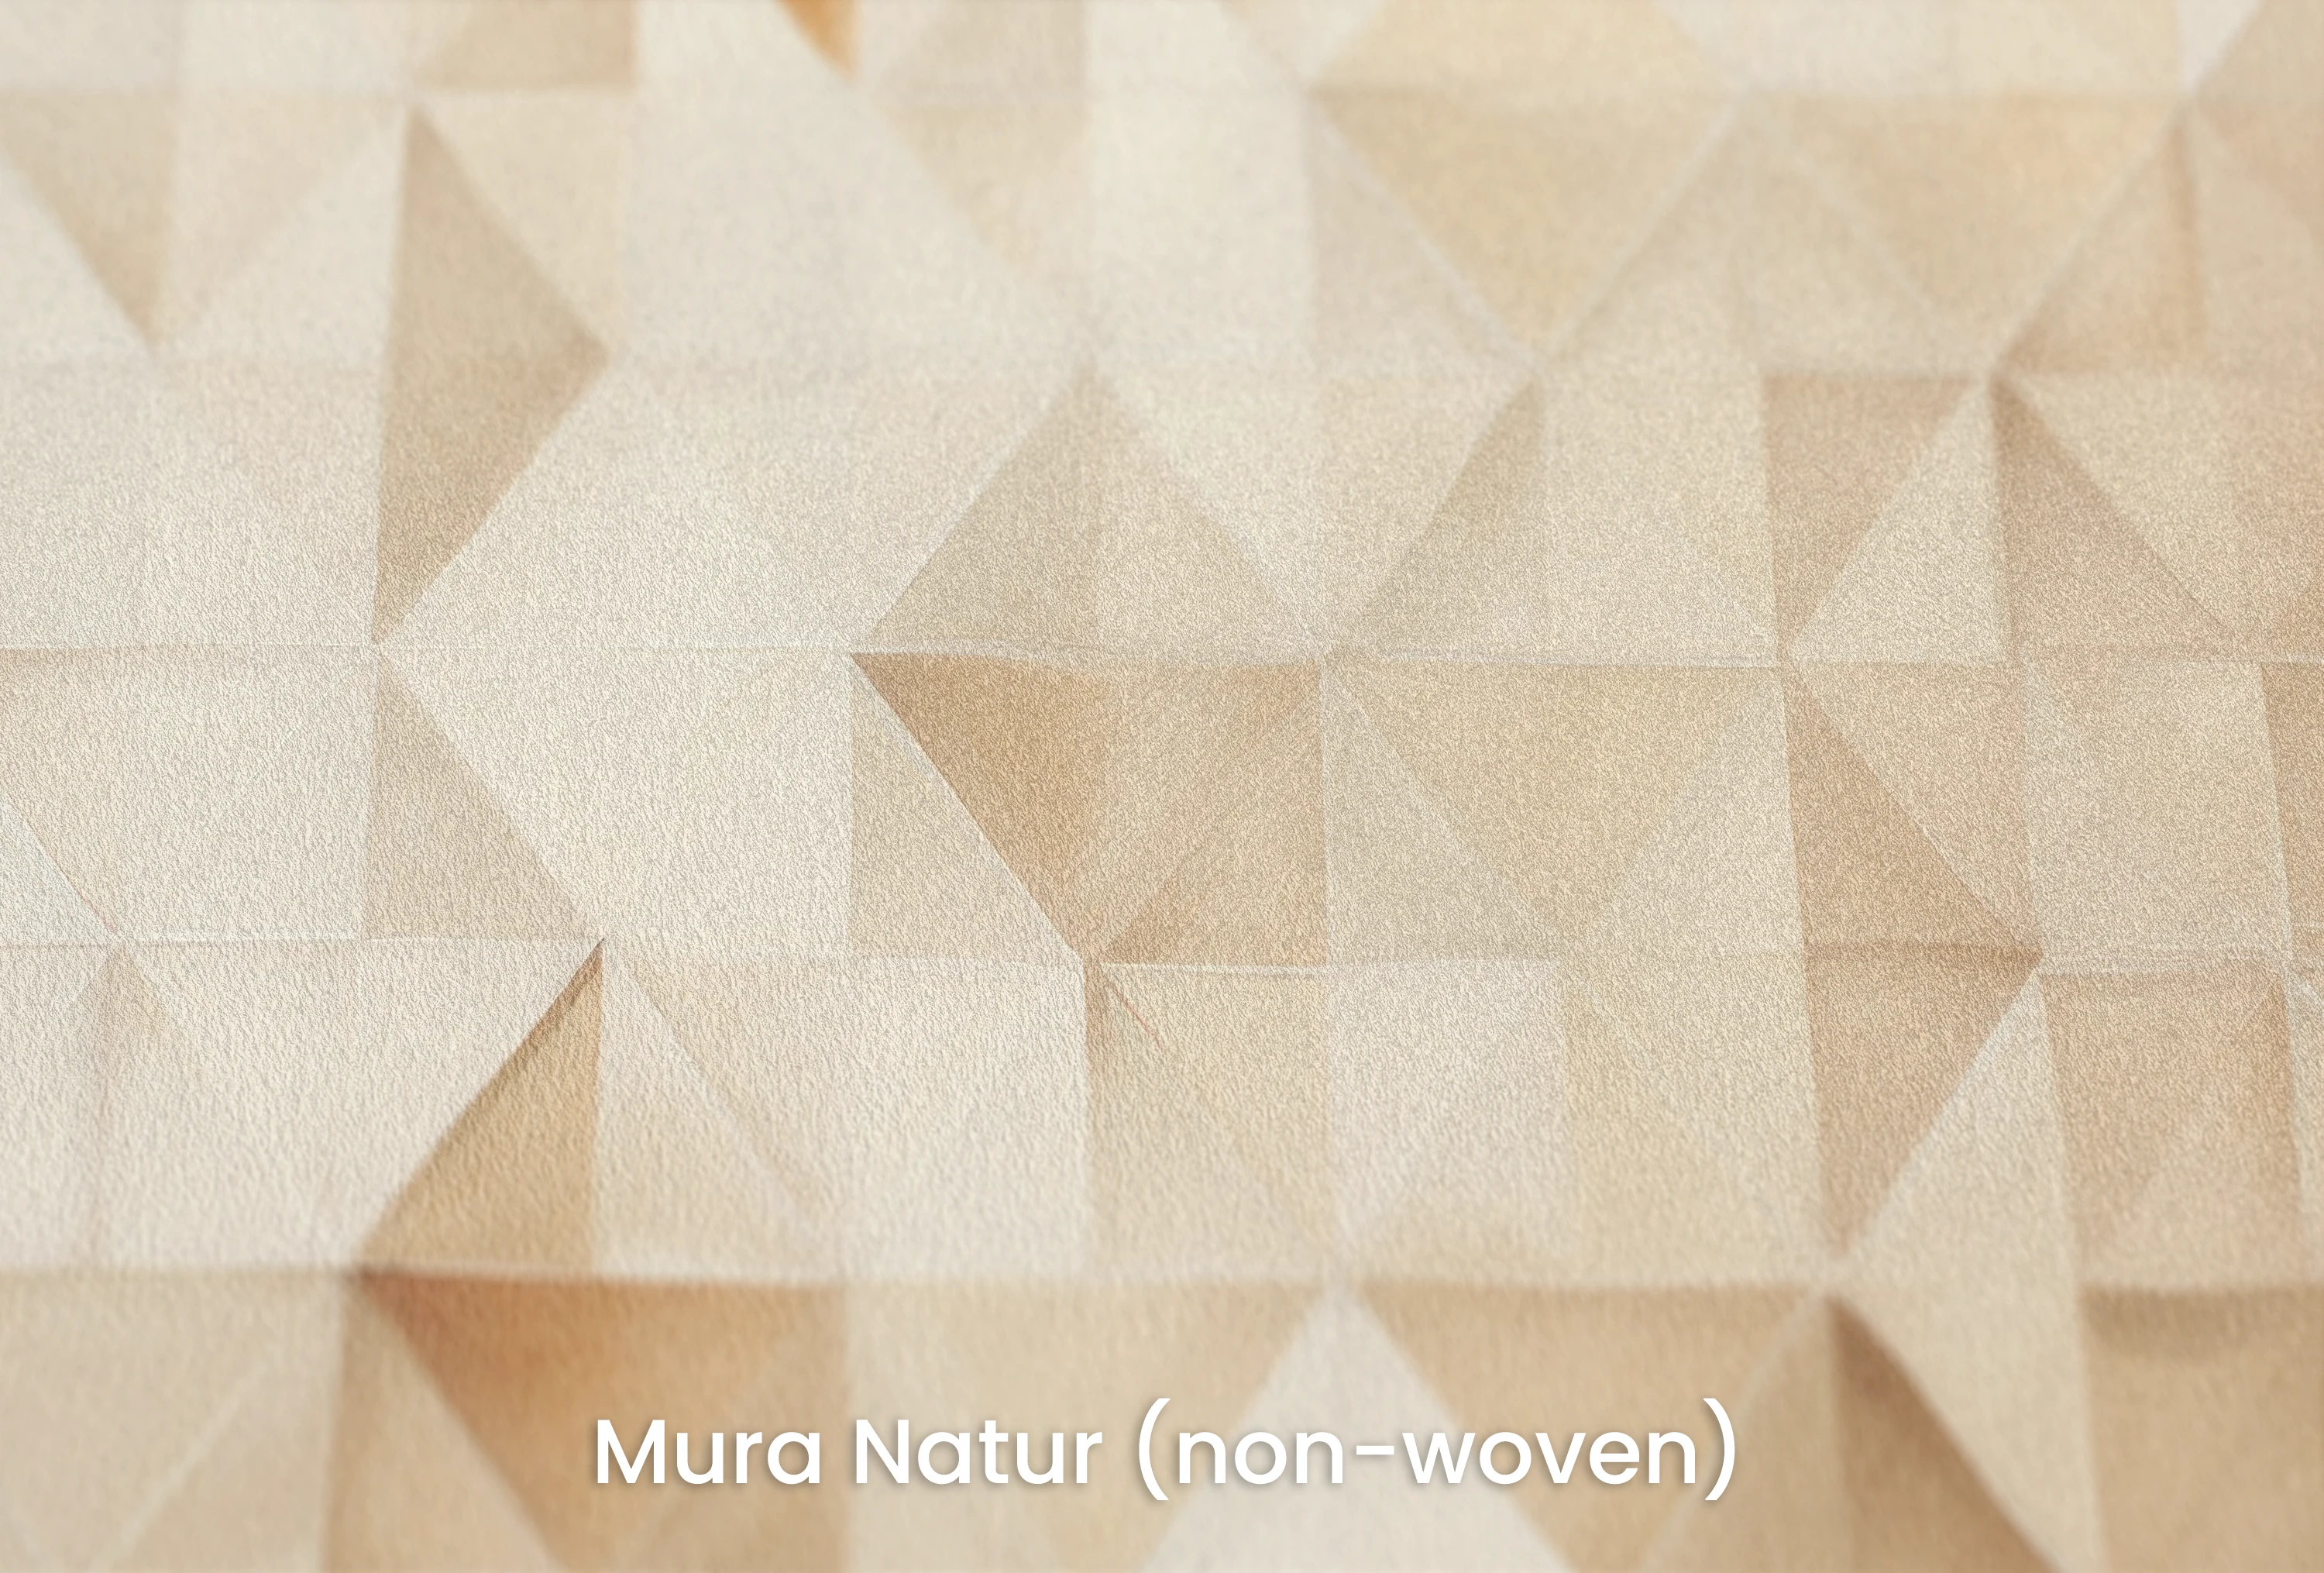 Mura Natur (Vlies) – Natürliche und ökologische Vliestapete mit zarter Textur – perfekt matt – gleichmäßiges fokussiertes Licht perfekt streuend